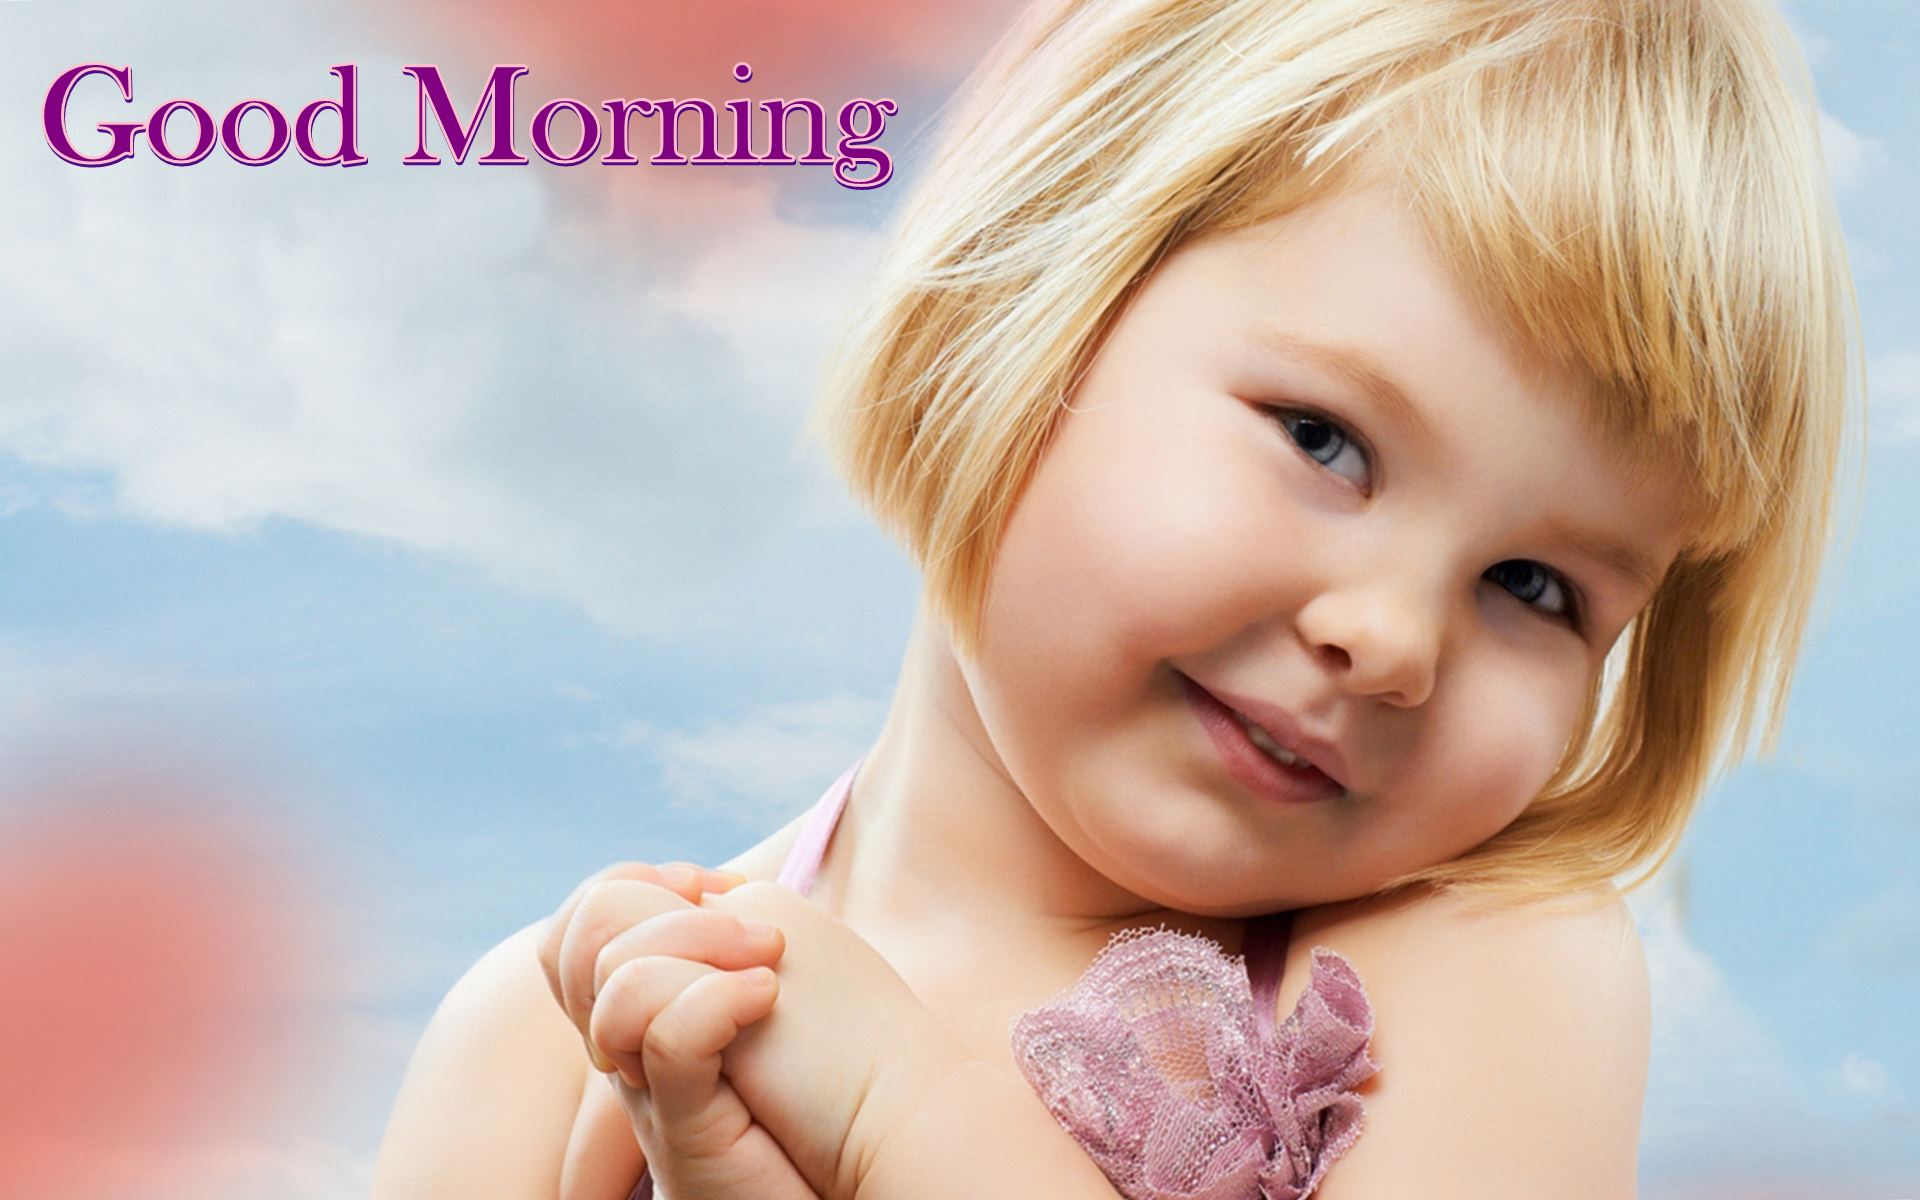 Cute Girl Wishing Good Morning - HD Wallpaper 